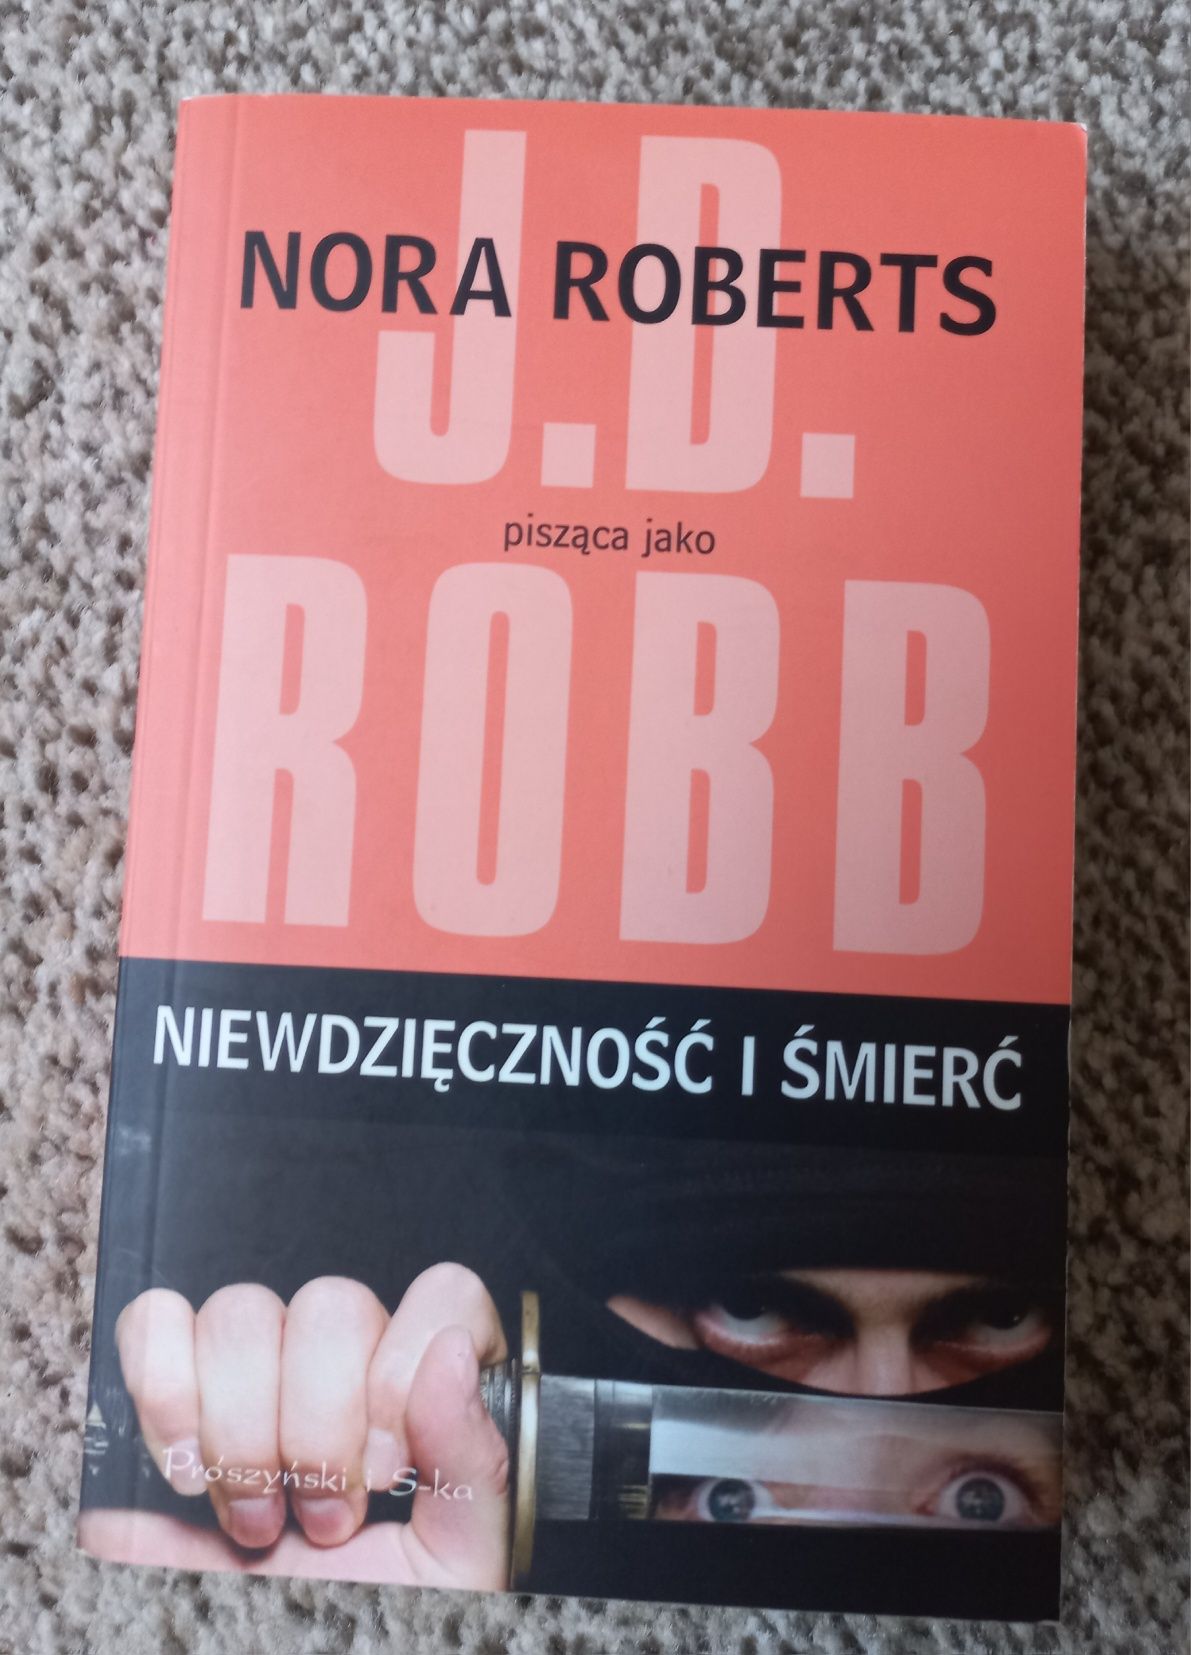 Niewdzięczność I śmierć J D Robb Nora Roberts